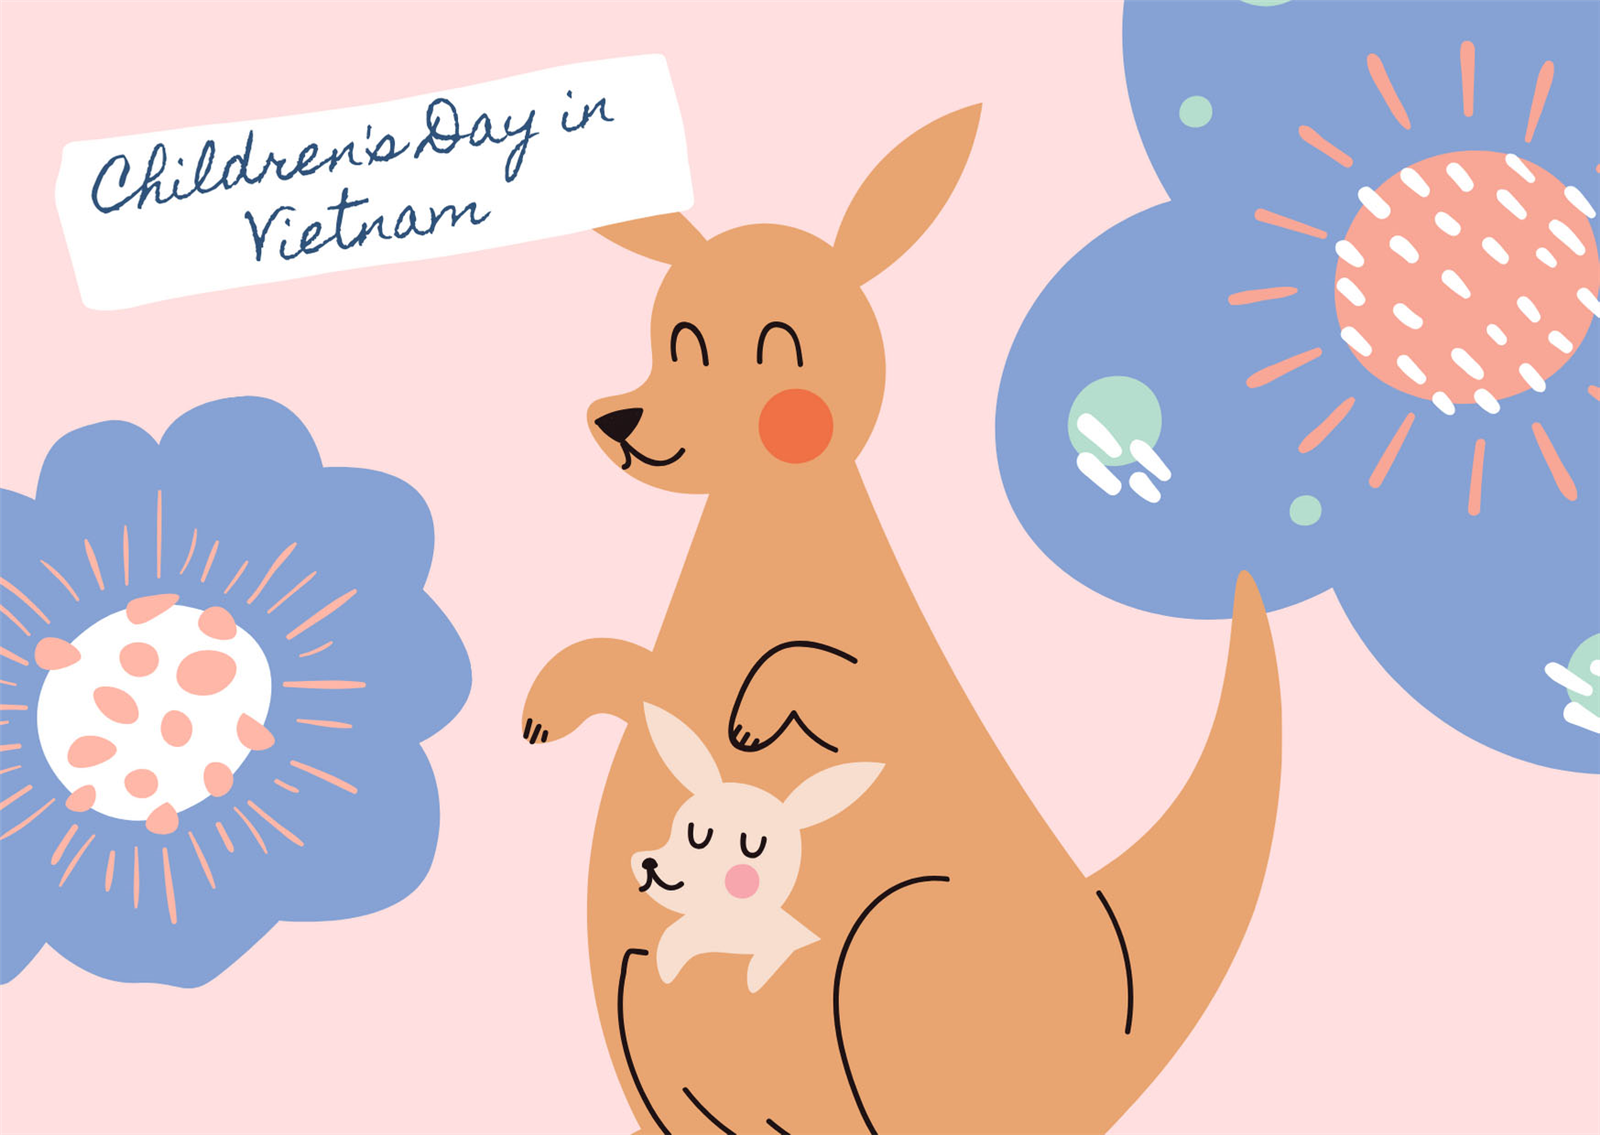 Children's day in VietNam